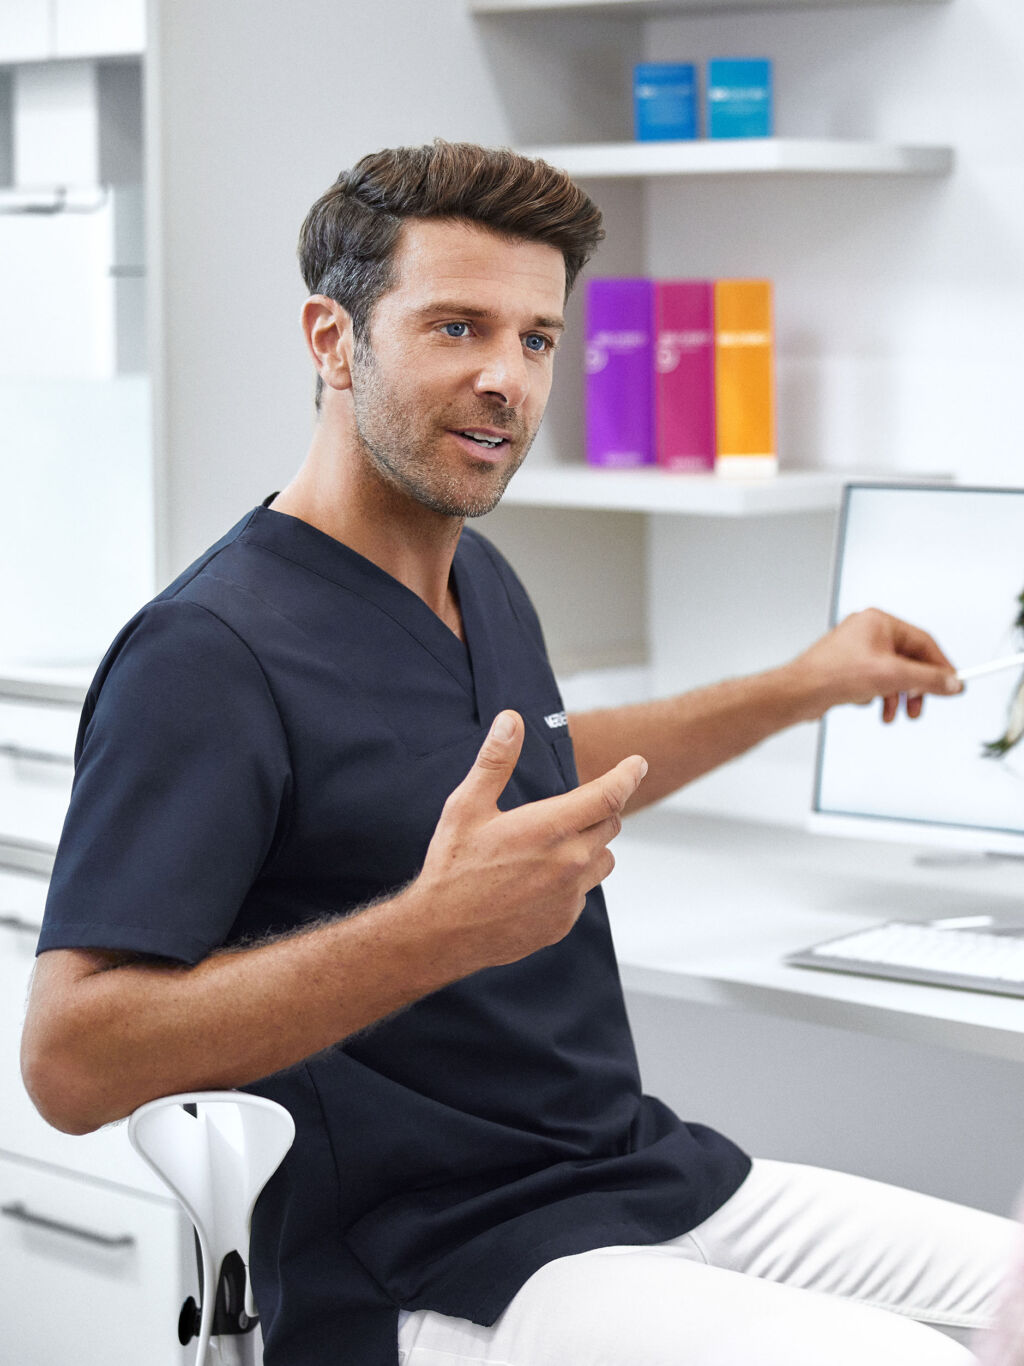 Arzt von Merz Aesthetics® zeigt einer Patientin an einem Bildschirm Behandlungsmöglichkeiten.